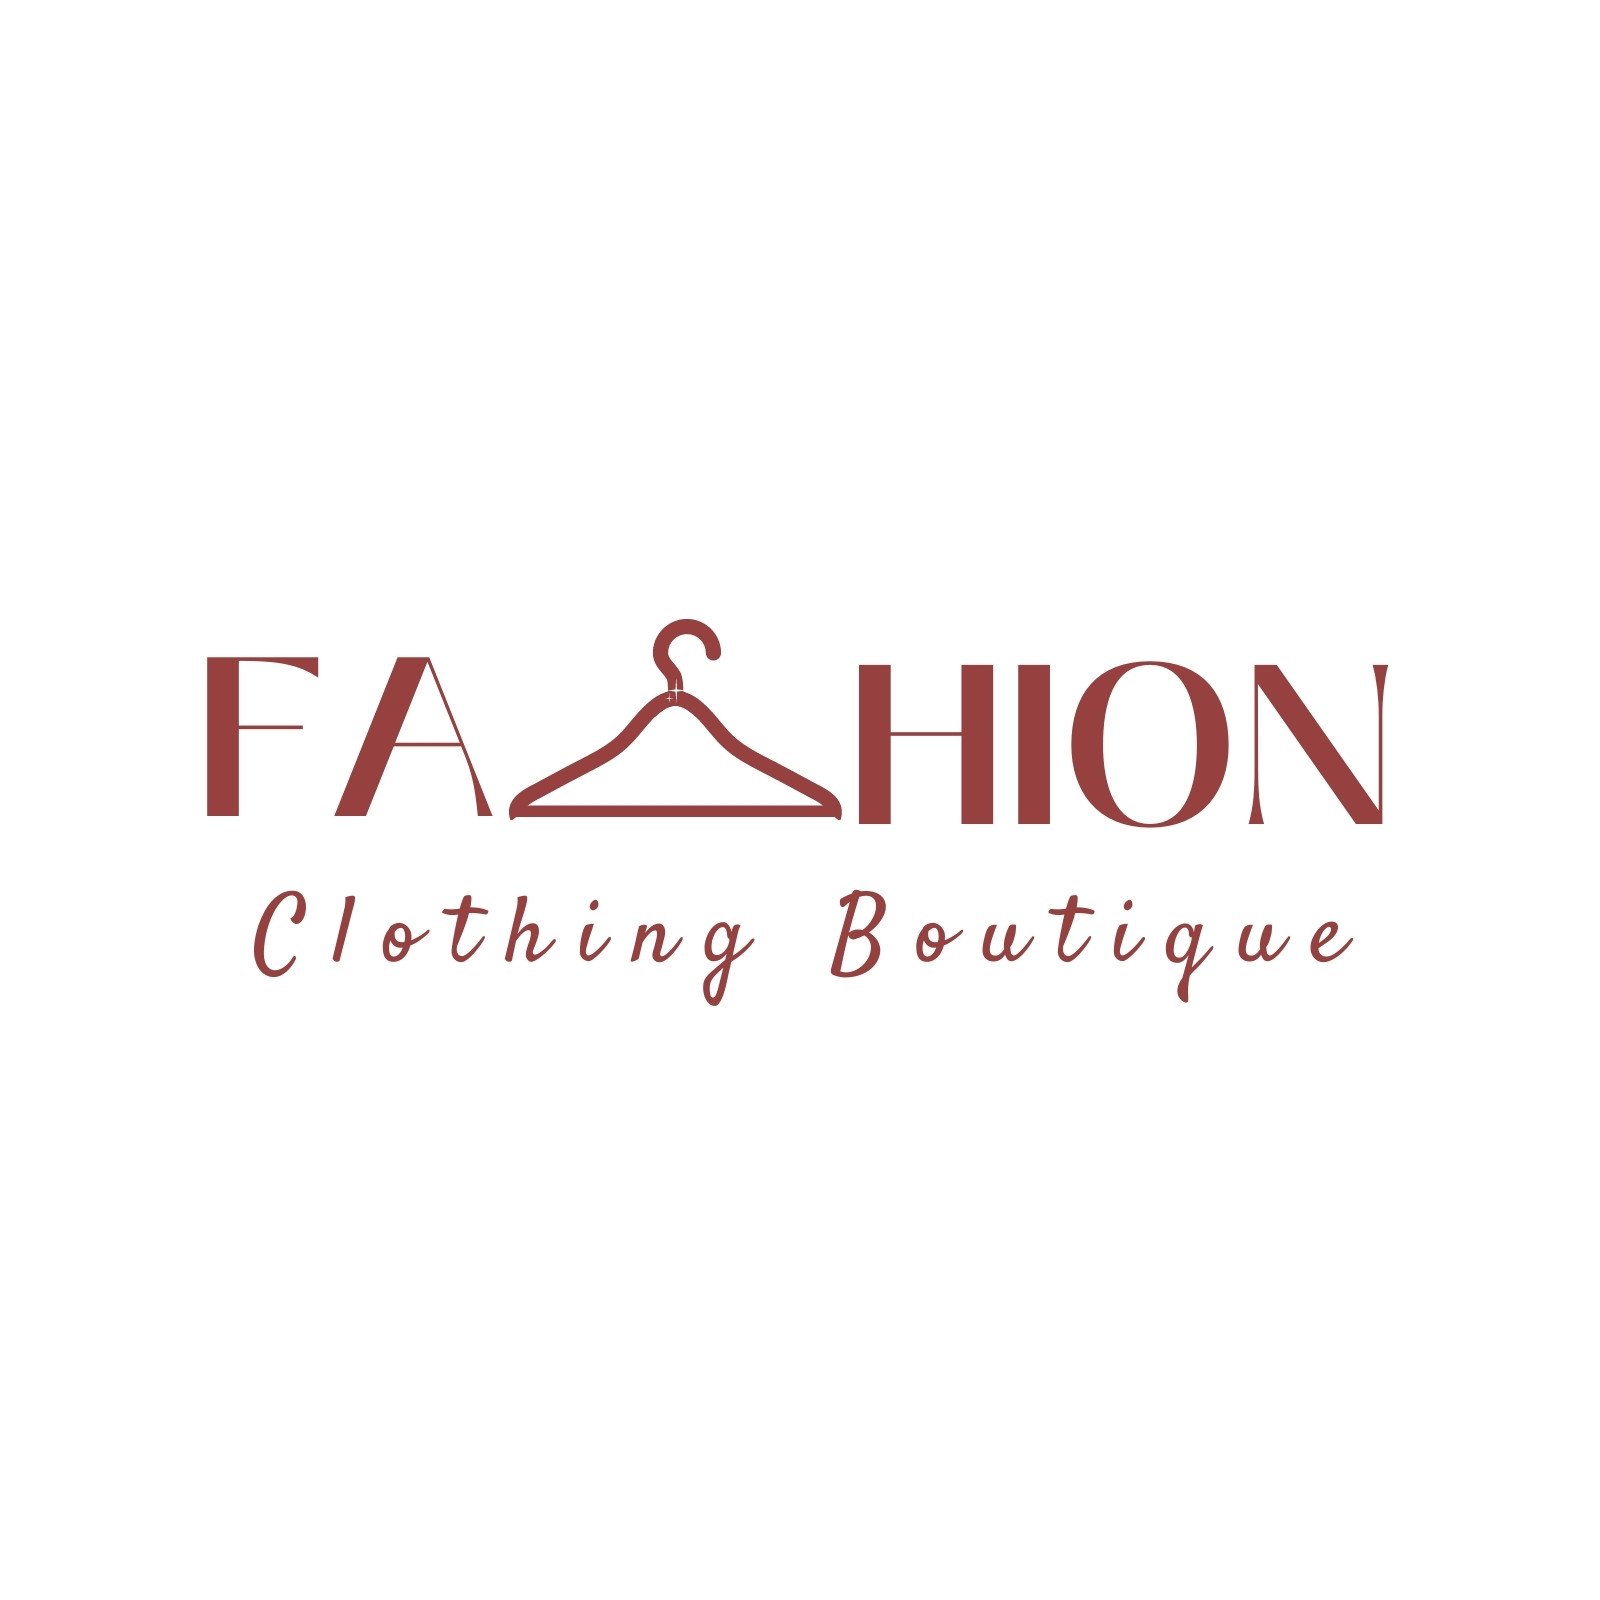 Clothing Brand Logo Design, Fashion Line Logo Design